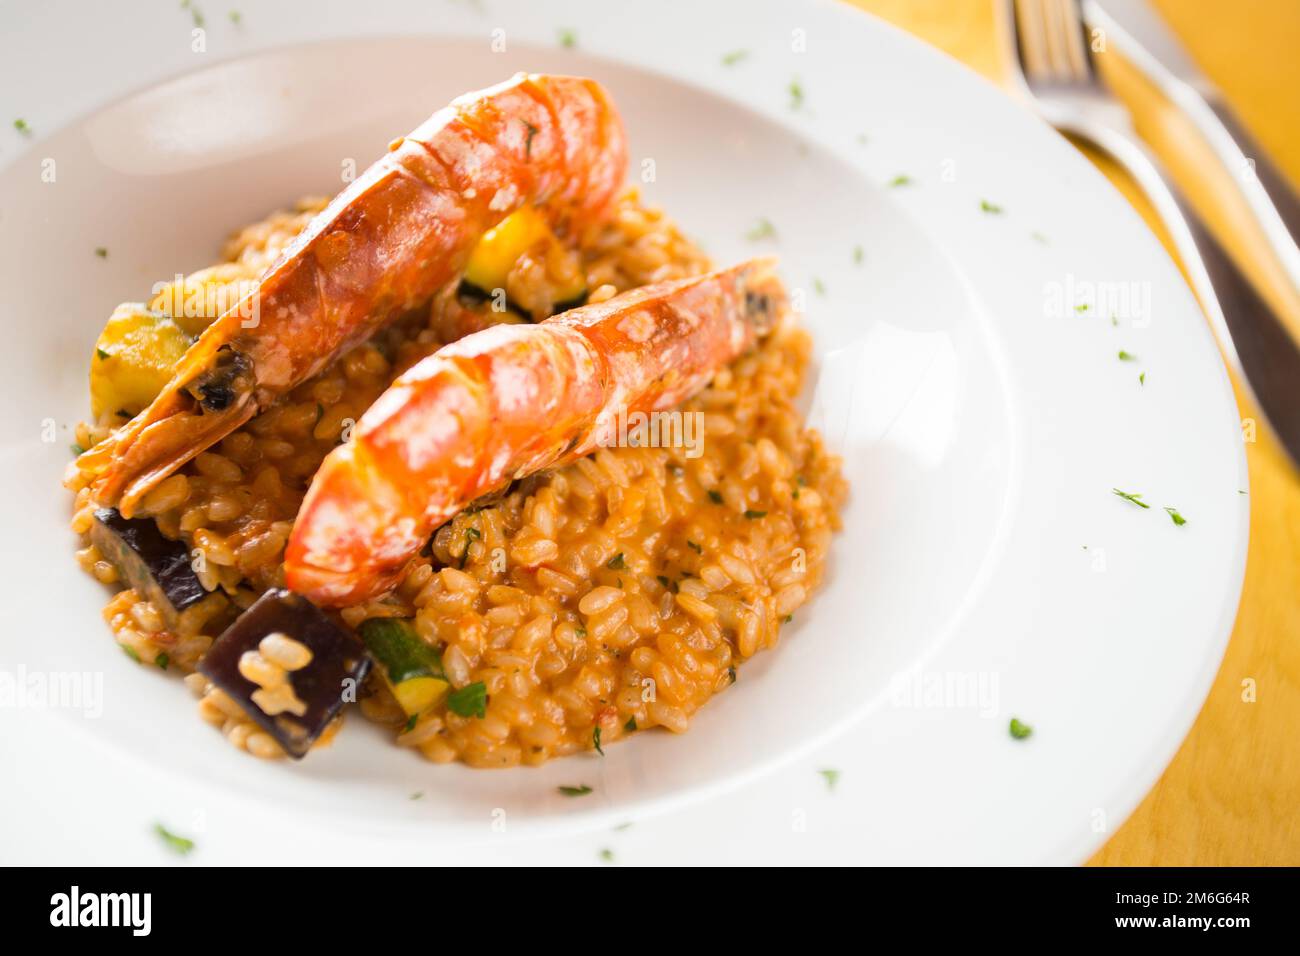 Risotto con schrimps. Il risotto è un piatto di riso del nord Italia cotto con brodo fino a raggiungere una consistenza cremosa. Foto Stock